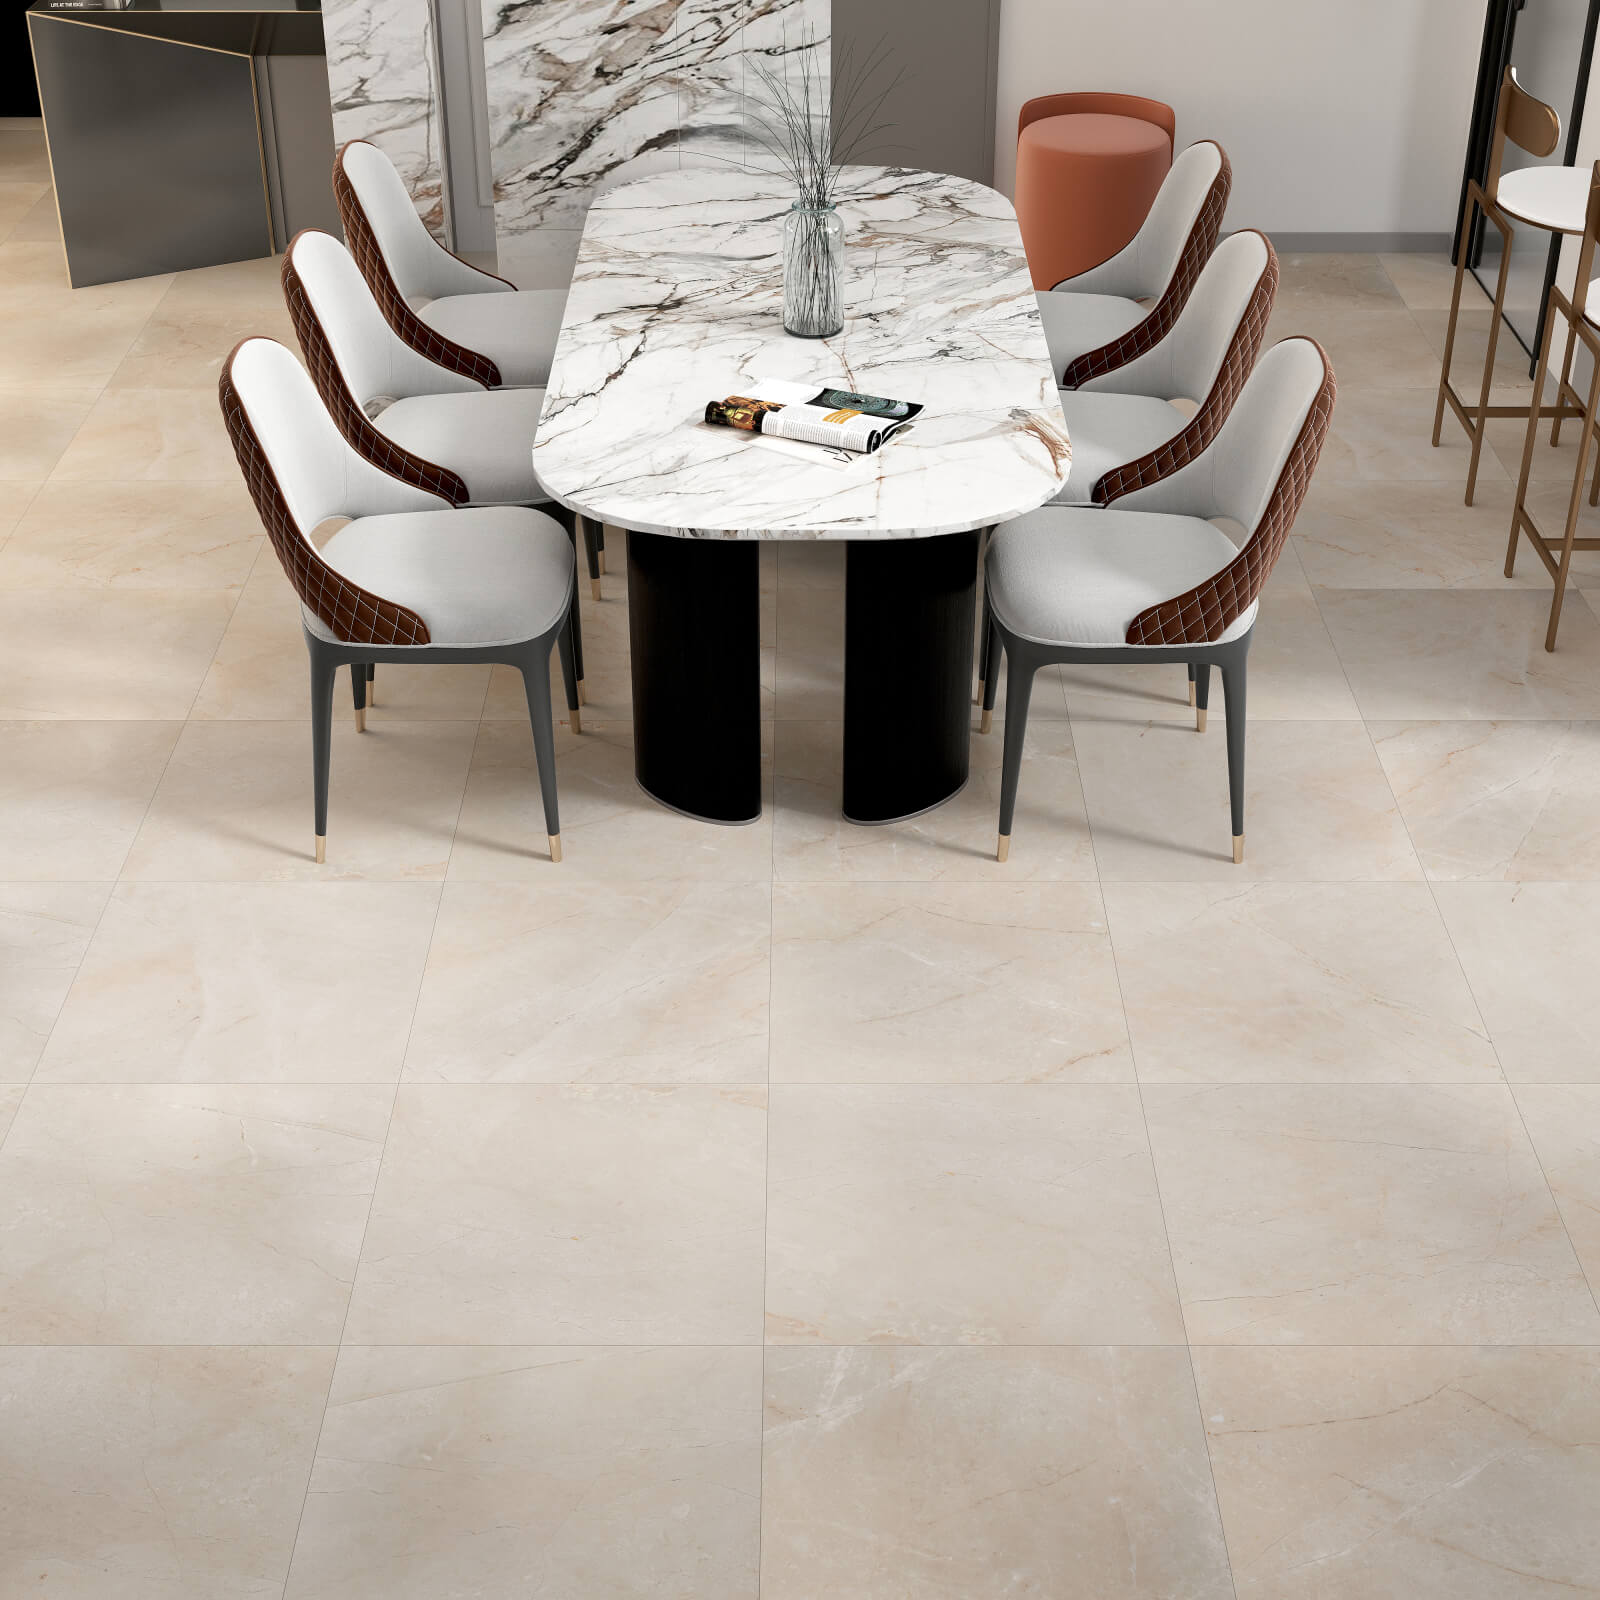 Crema Marfil Premium Marble Tile